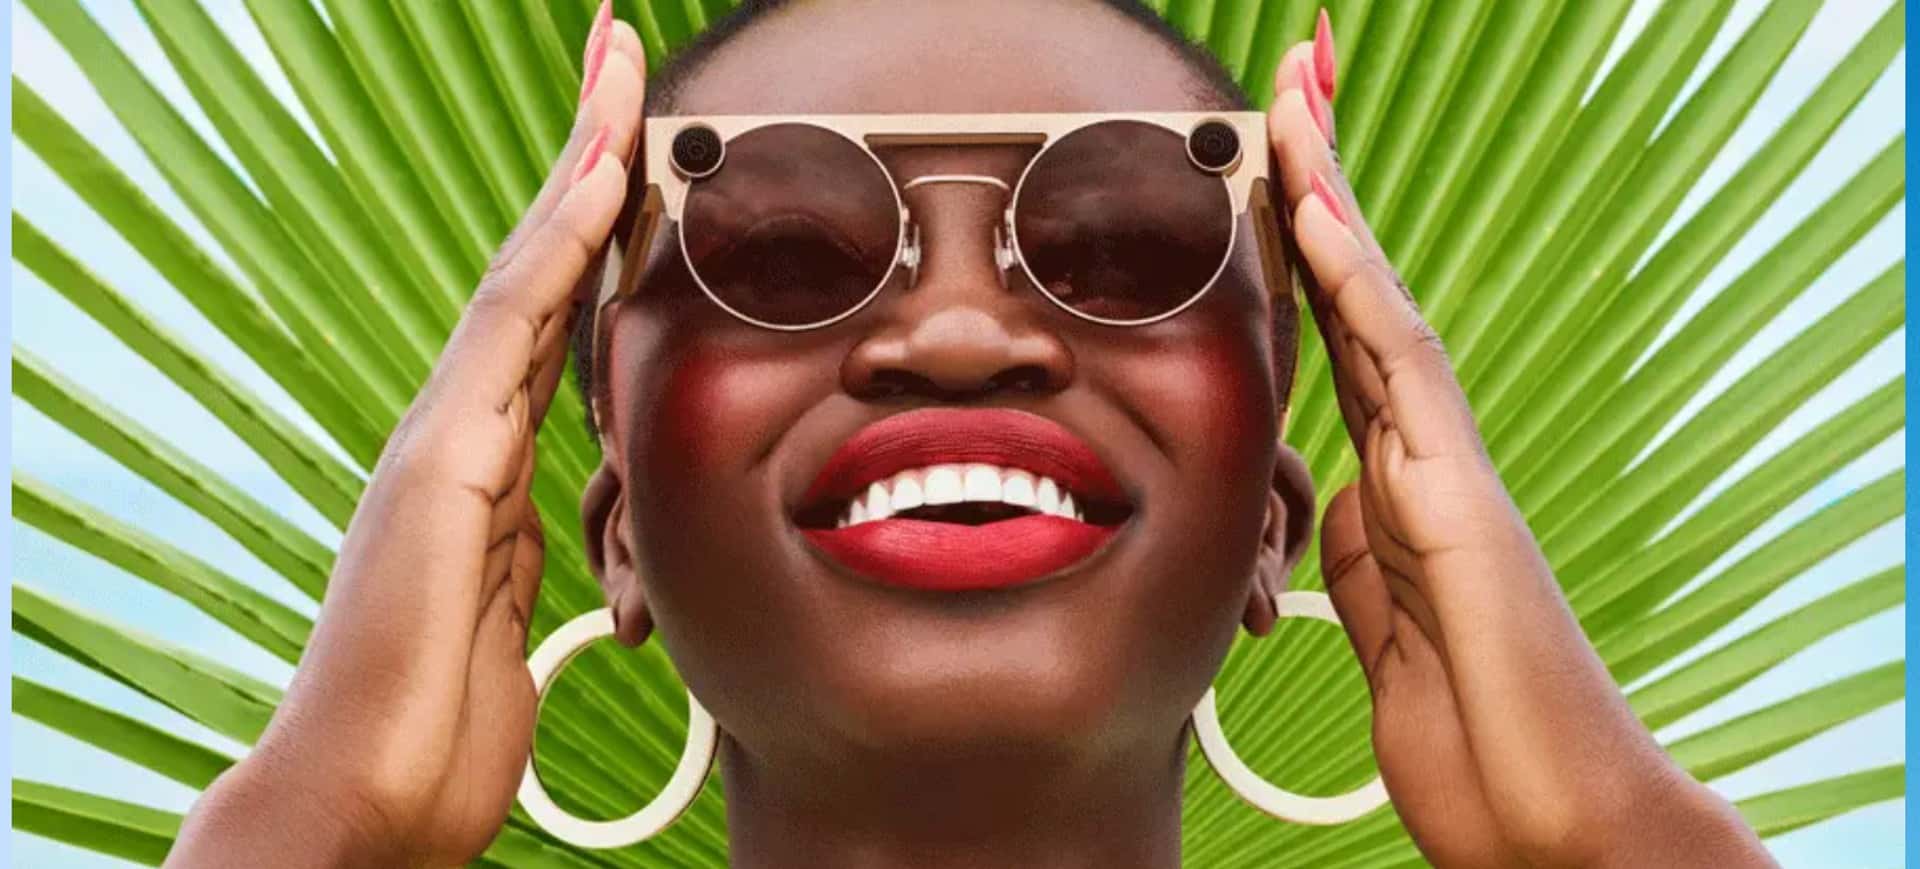 Rosto de uma mulher negra, que utiliza um batom vermelho, veste brincos de argola e os óculos de realidade virtual da Snap, o Spectacles; as mãos da mulher aparecem ao lado dos óculos, segurando a haste e o fundo da imagem possui dois tons de verde intercalados